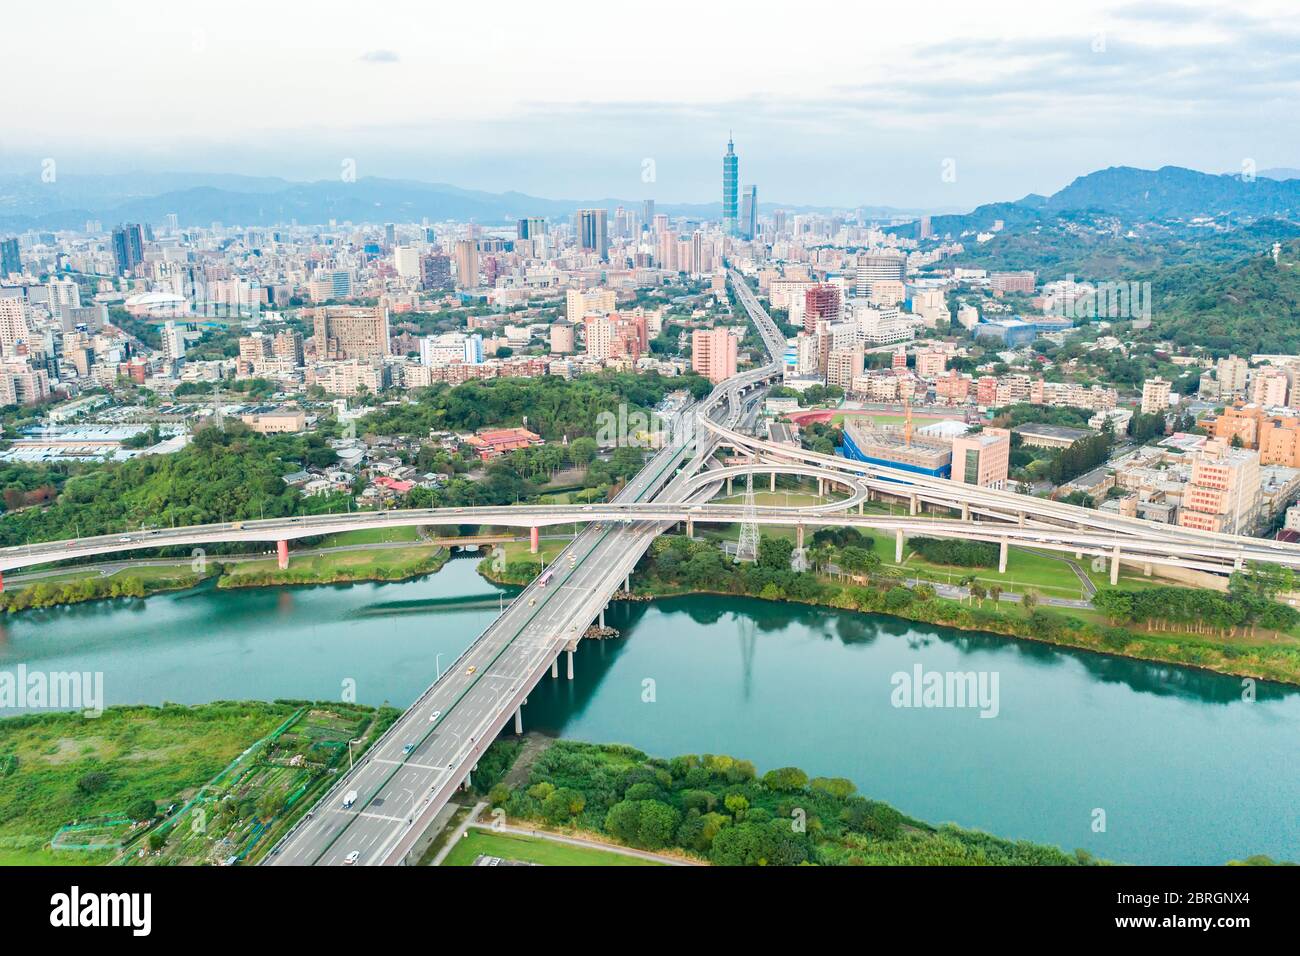 Vista aérea de la ciudad de Taipei - imagen del concepto de negocio de Asia, paisaje urbano moderno panorámico edificio vista de pájaro bajo el amanecer y el cielo azul brillante de la mañana, Foto de stock